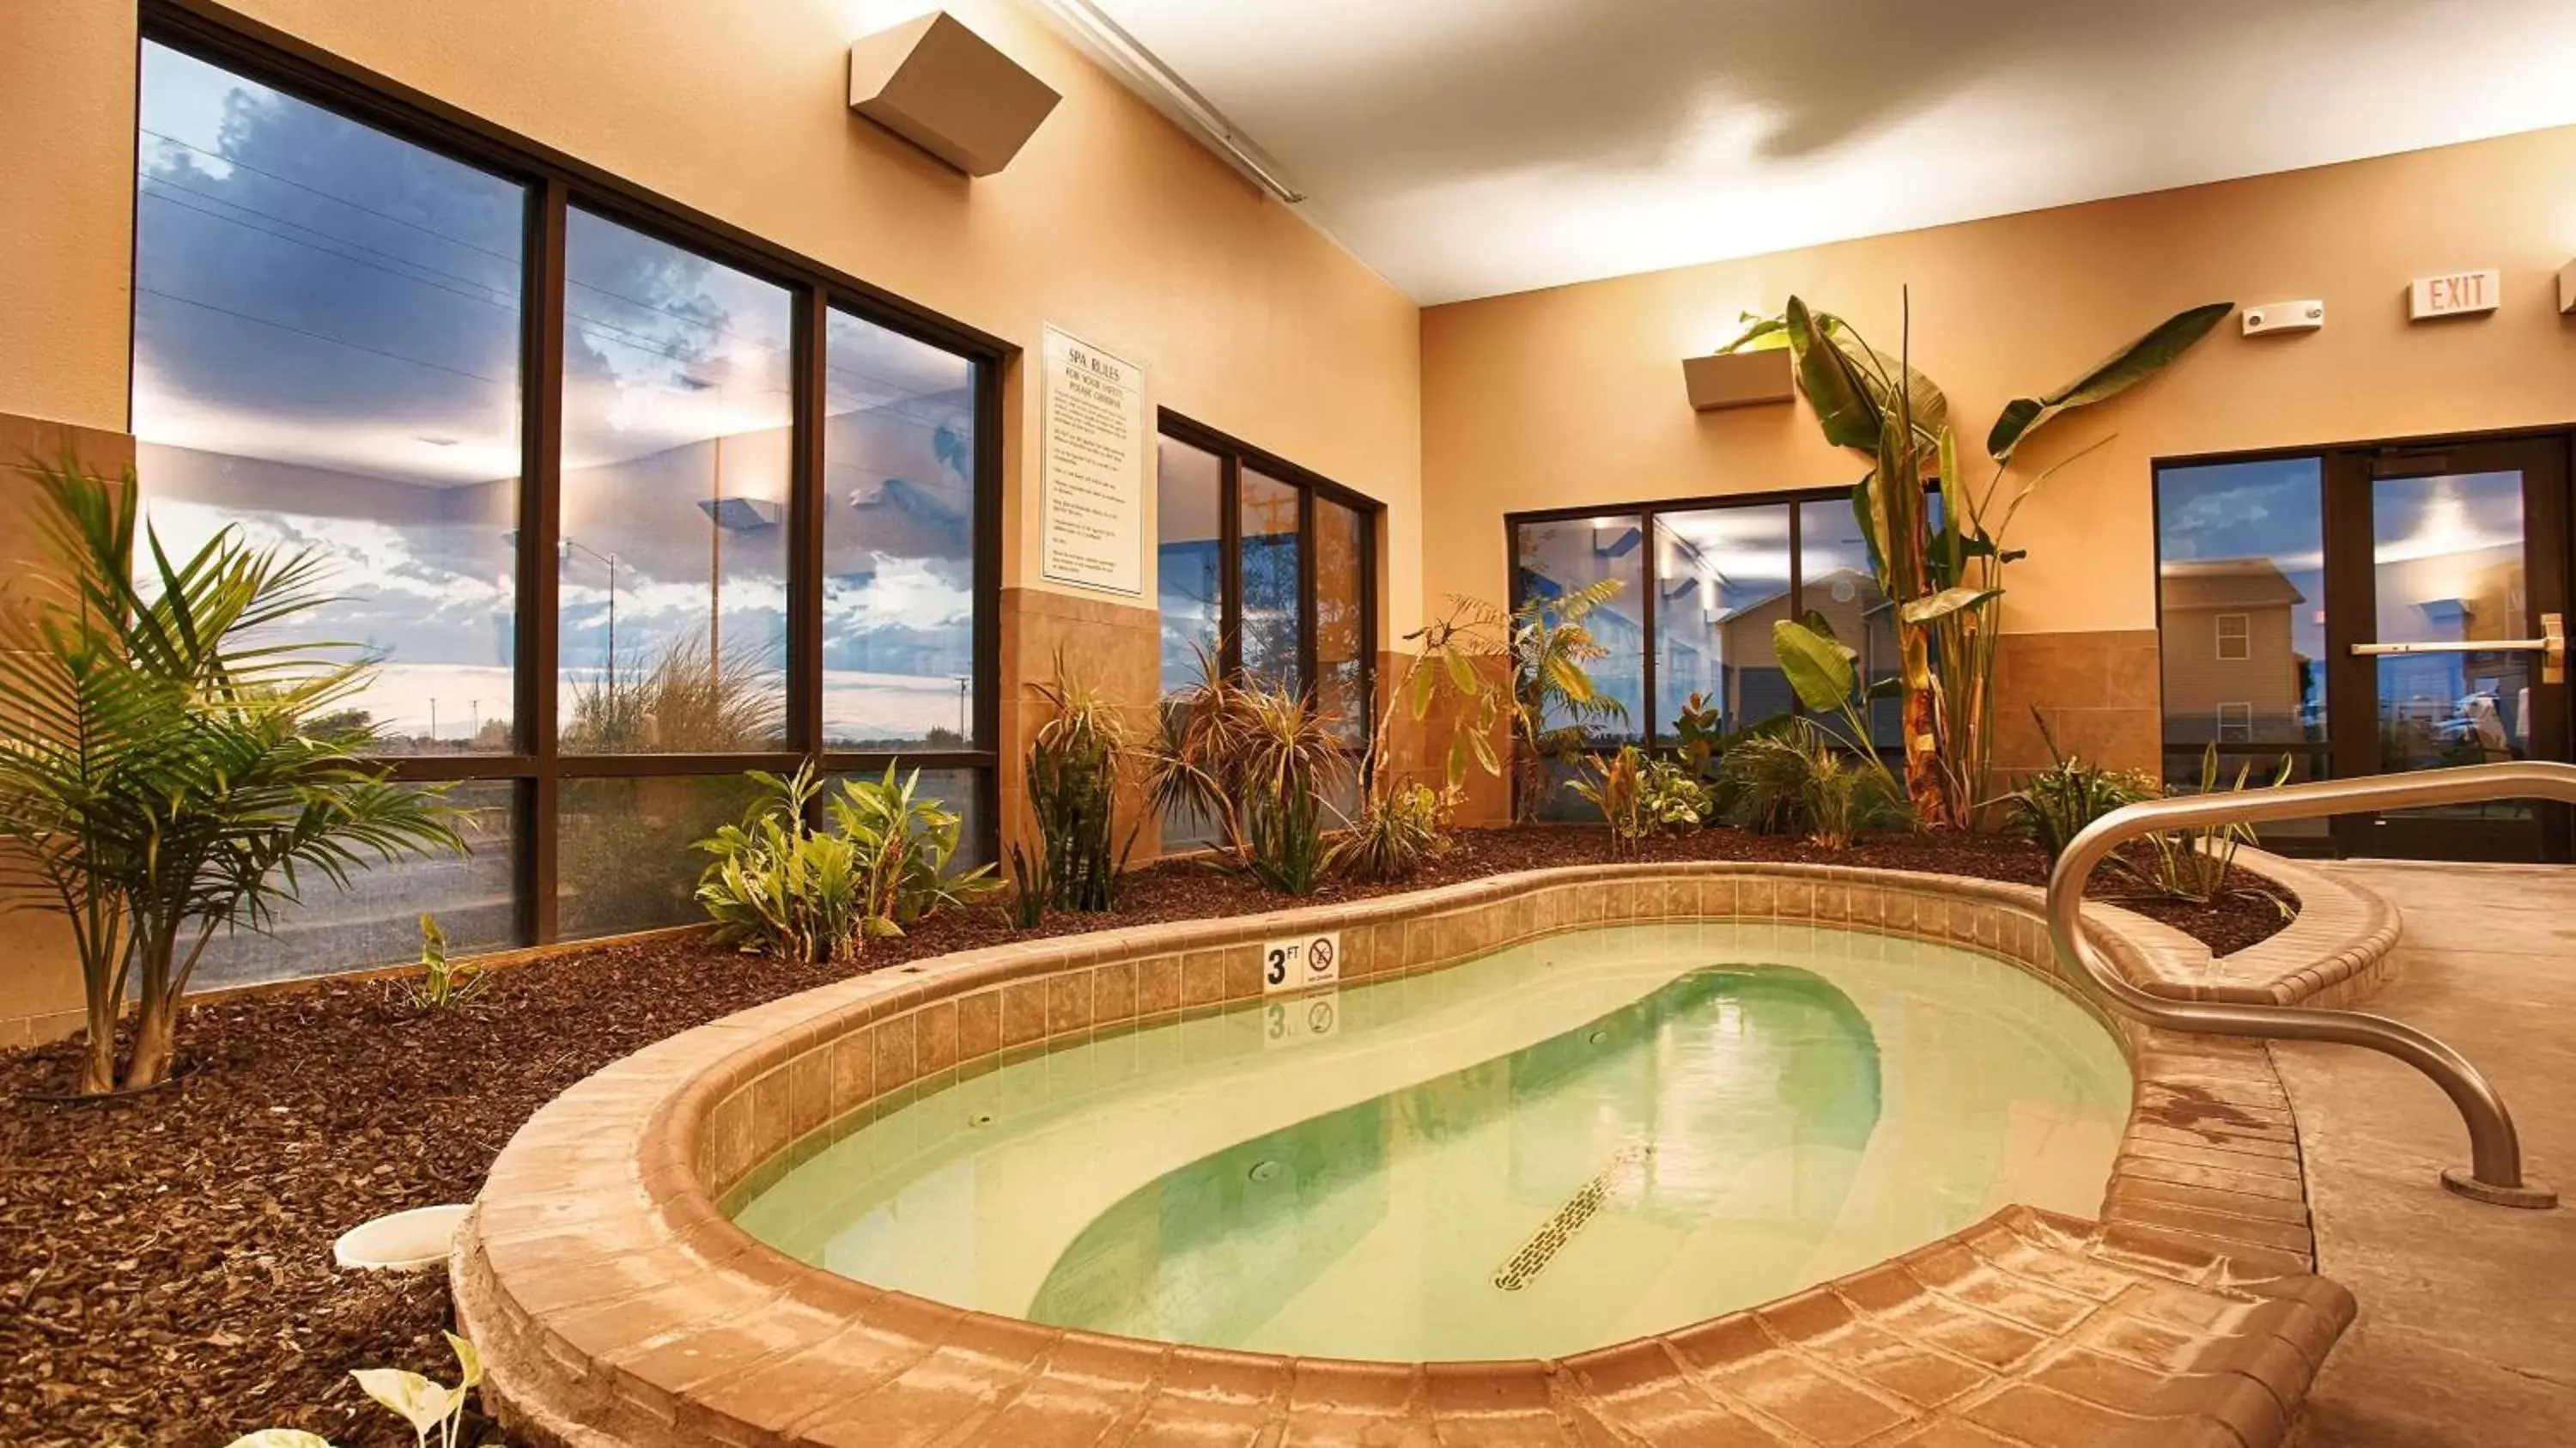 On site, Swimming Pool in Best Western Plus Night Watchman Inn & Suites